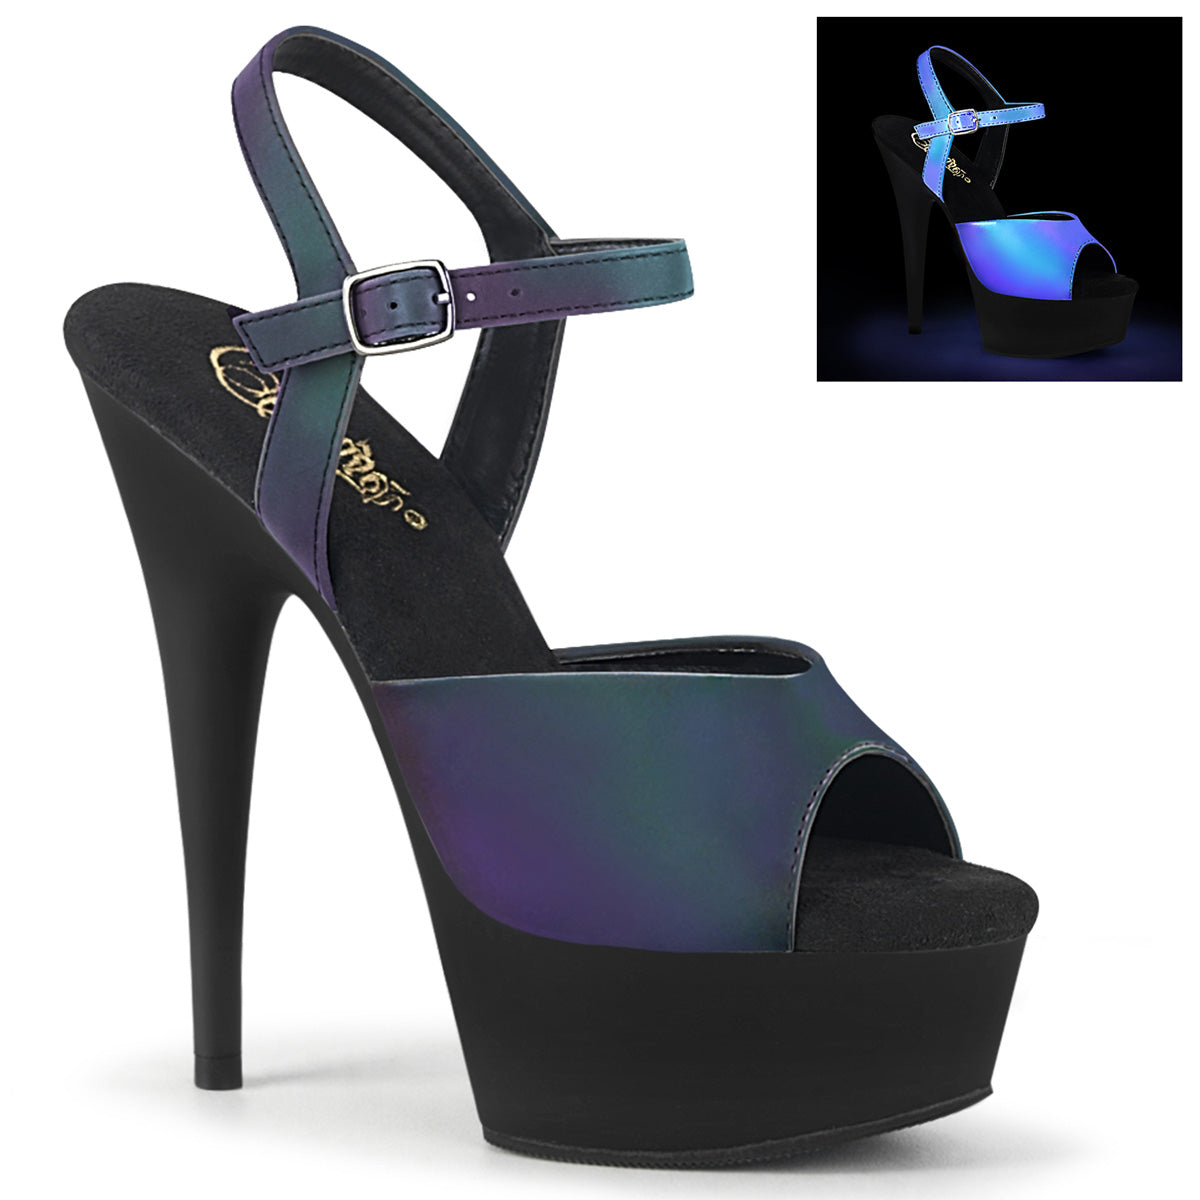 DELIGHT-609REFL Black & Purple Ankle Peep Toe High Heel